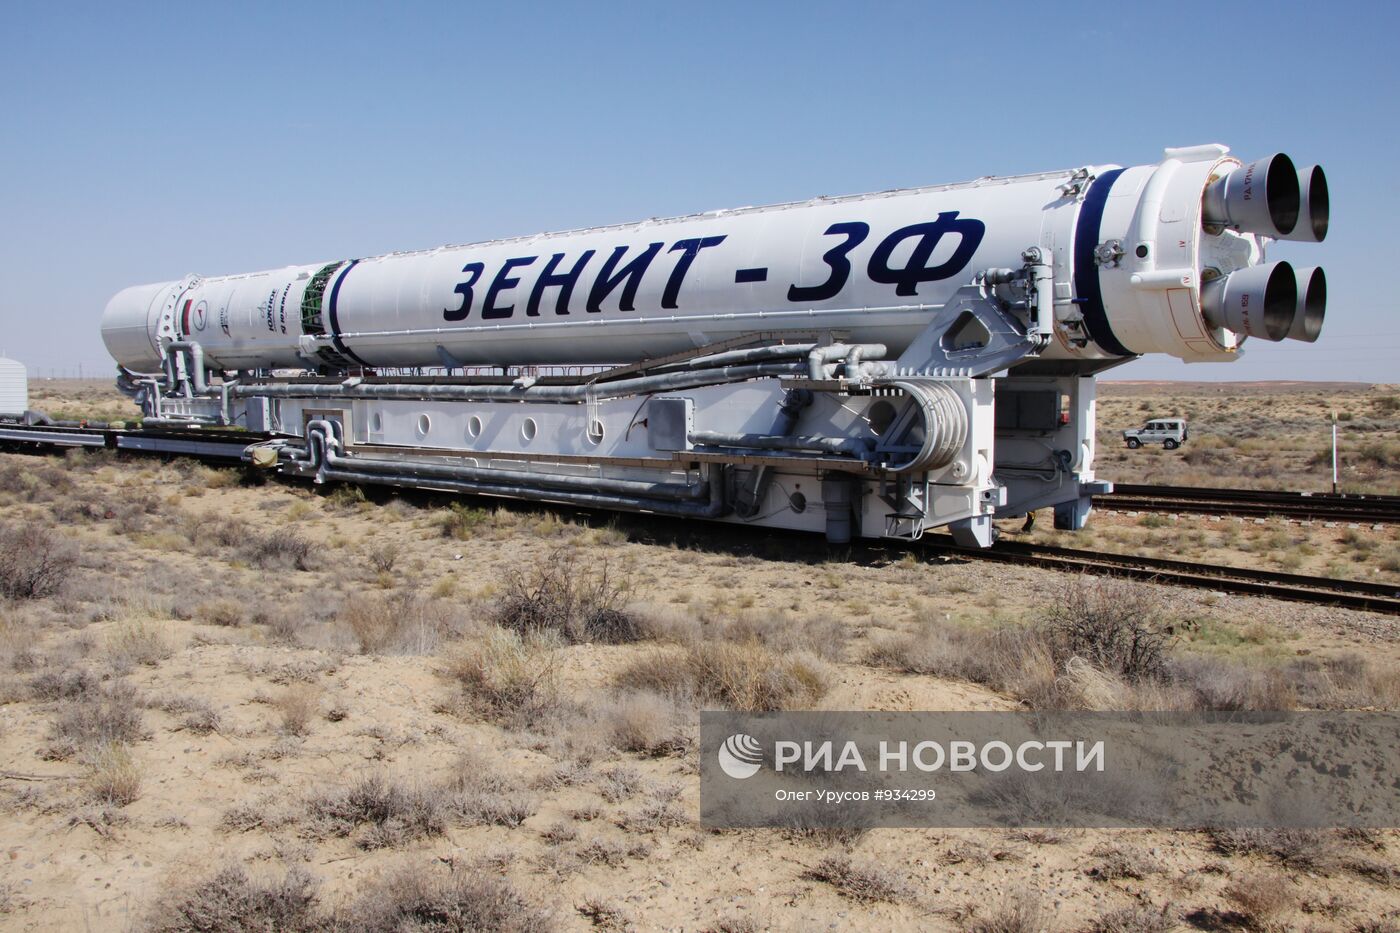 Вывоз ракеты космического назначения "Зенит-3М"